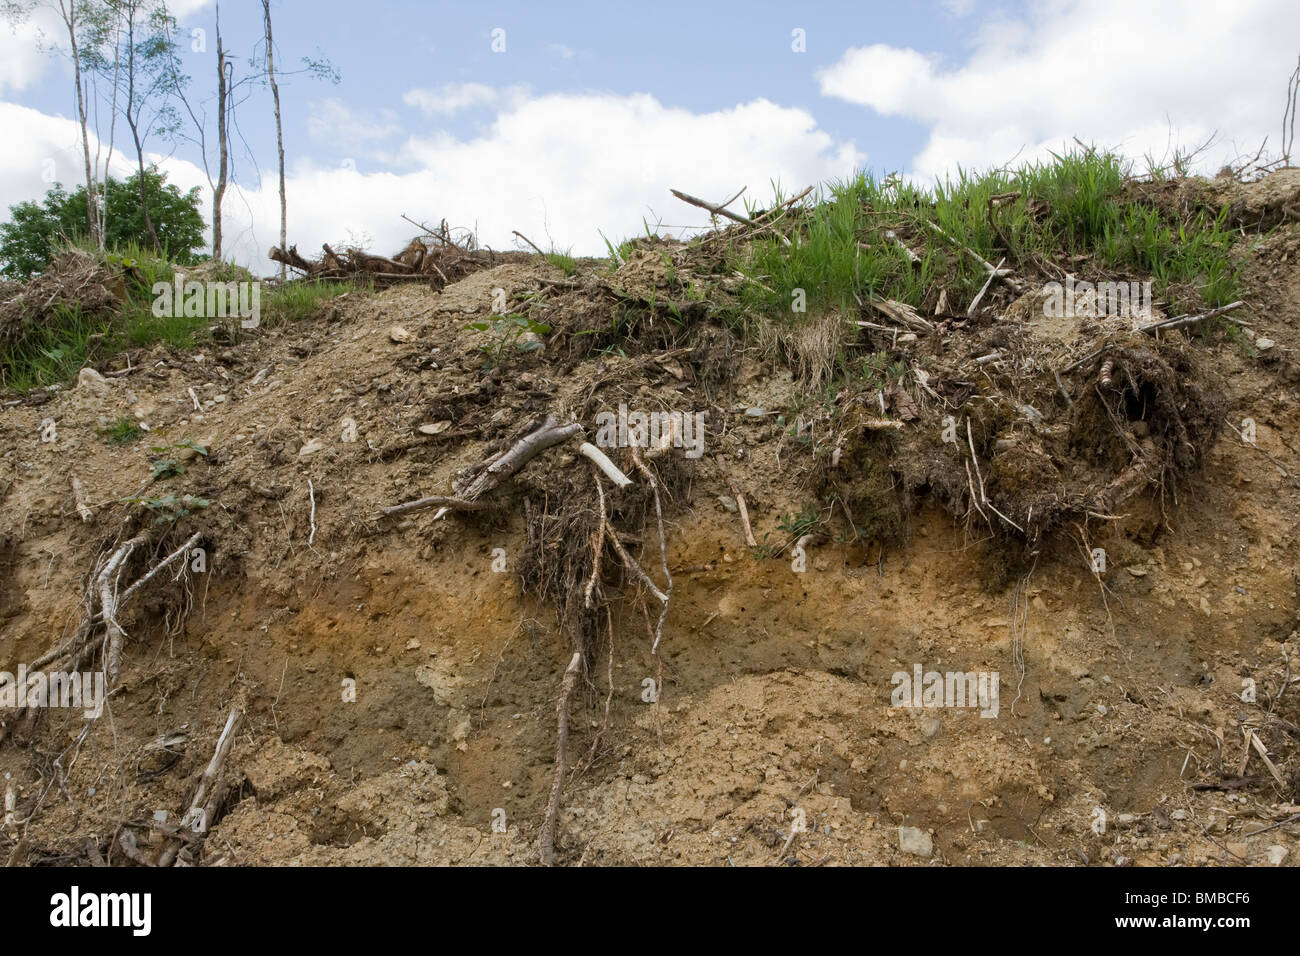 La pourriture en décomposition,arbre,euro,,direction des branches,stump.clay,sol,dump.exposés,root,plant Banque D'Images